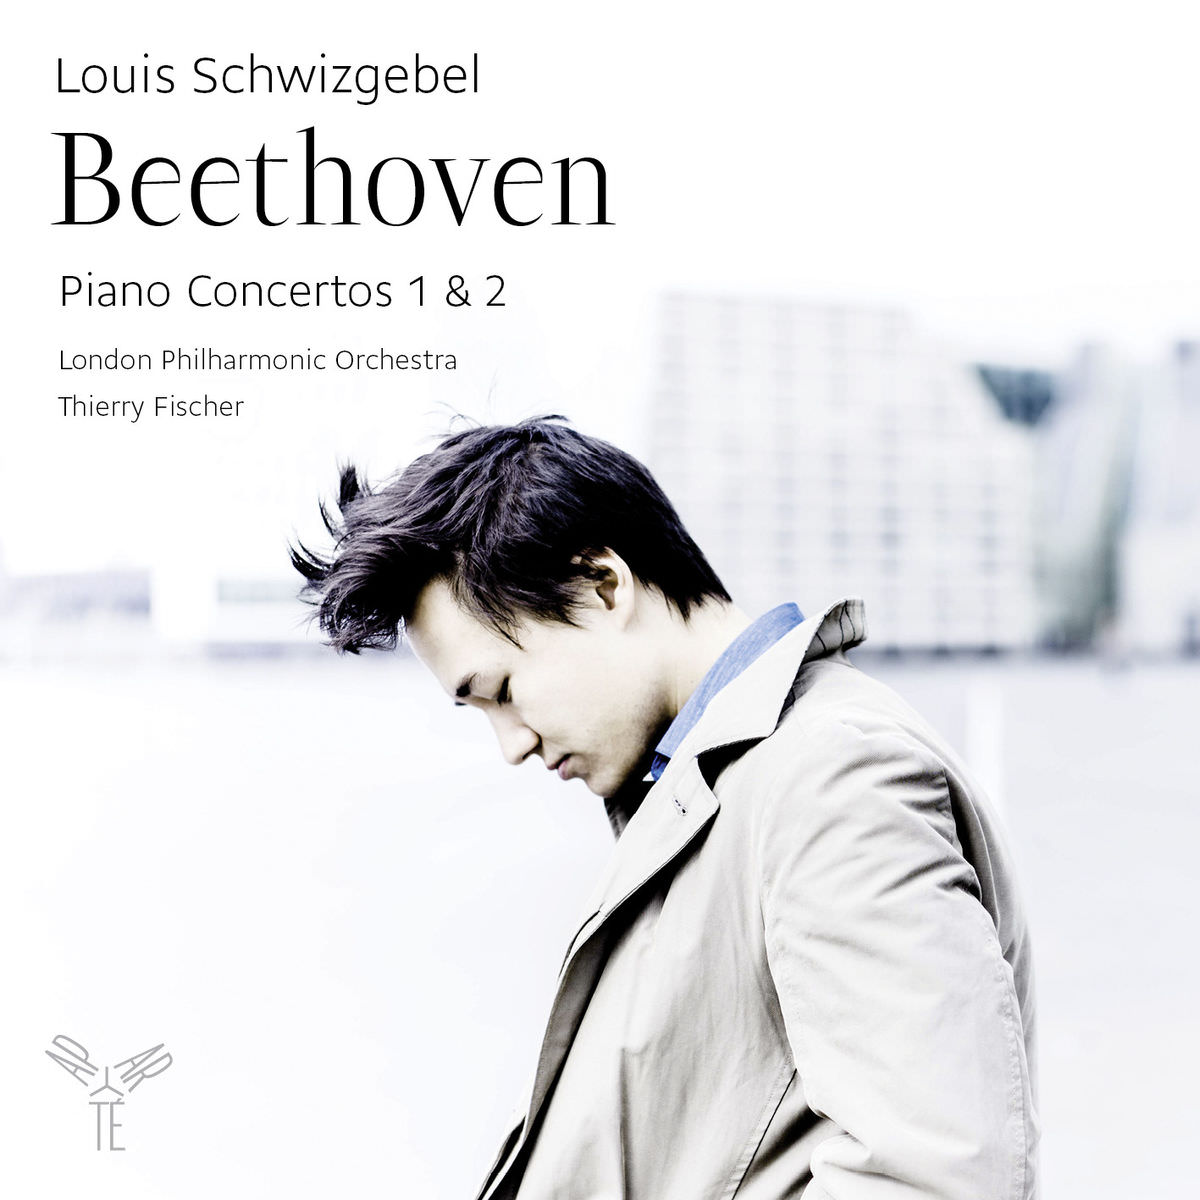 Louis Schwizgebel – Beethoveen: Piano Concertos 1 & 2 (2014) [FLAC 24bit/96kHz]